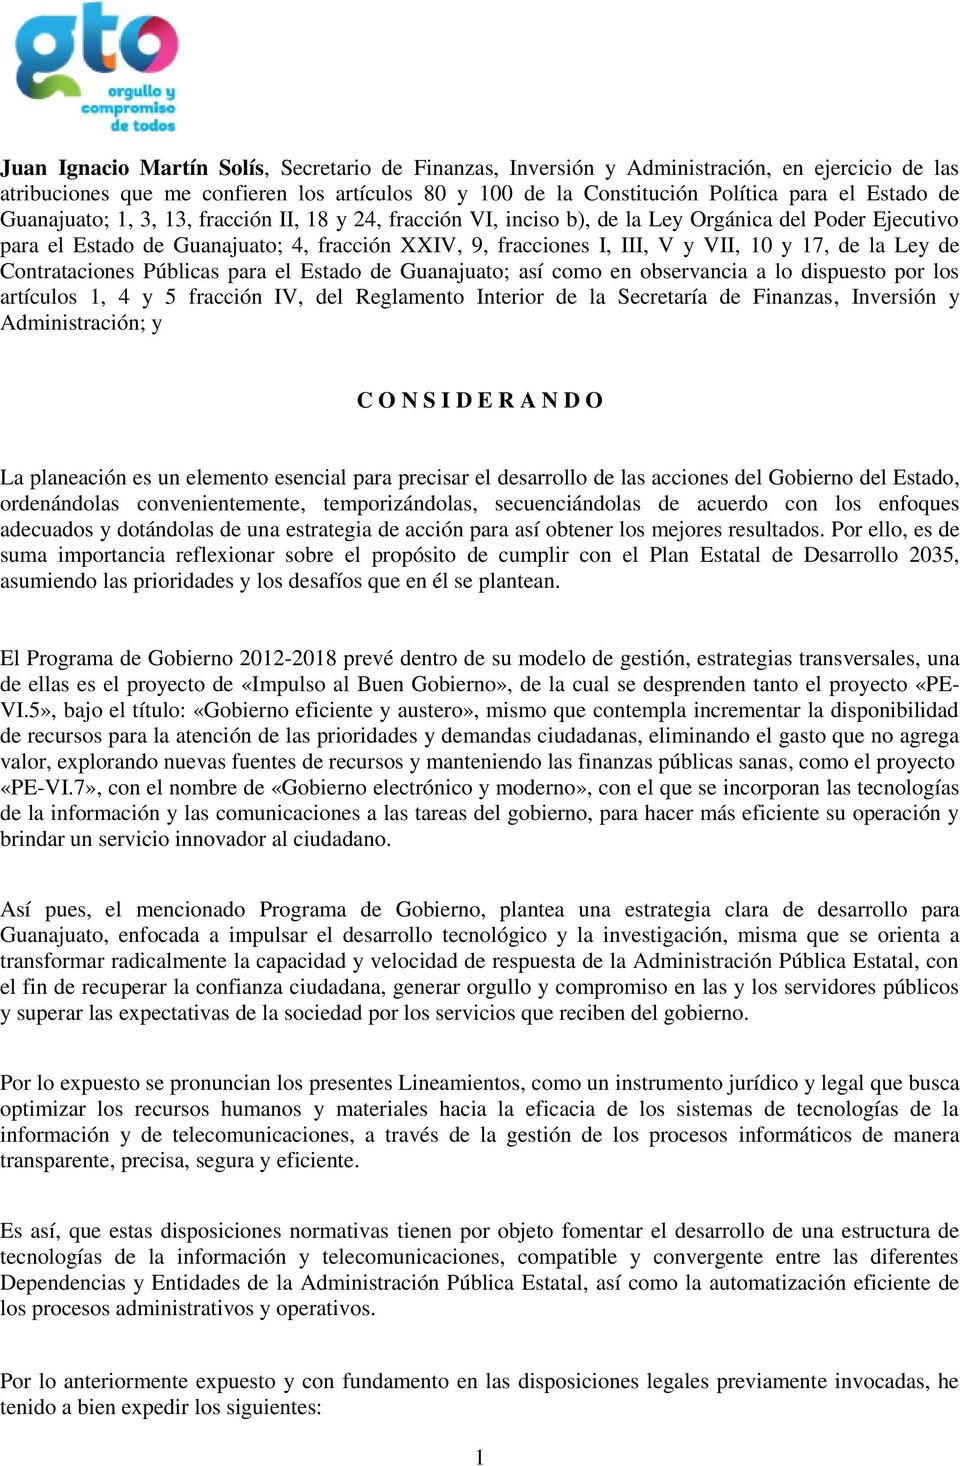 la Ley de Contrataciones Públicas para el Estado de Guanajuato; así como en observancia a lo dispuesto por los artículos 1, 4 y 5 fracción IV, del Reglamento Interior de la Secretaría de Finanzas,